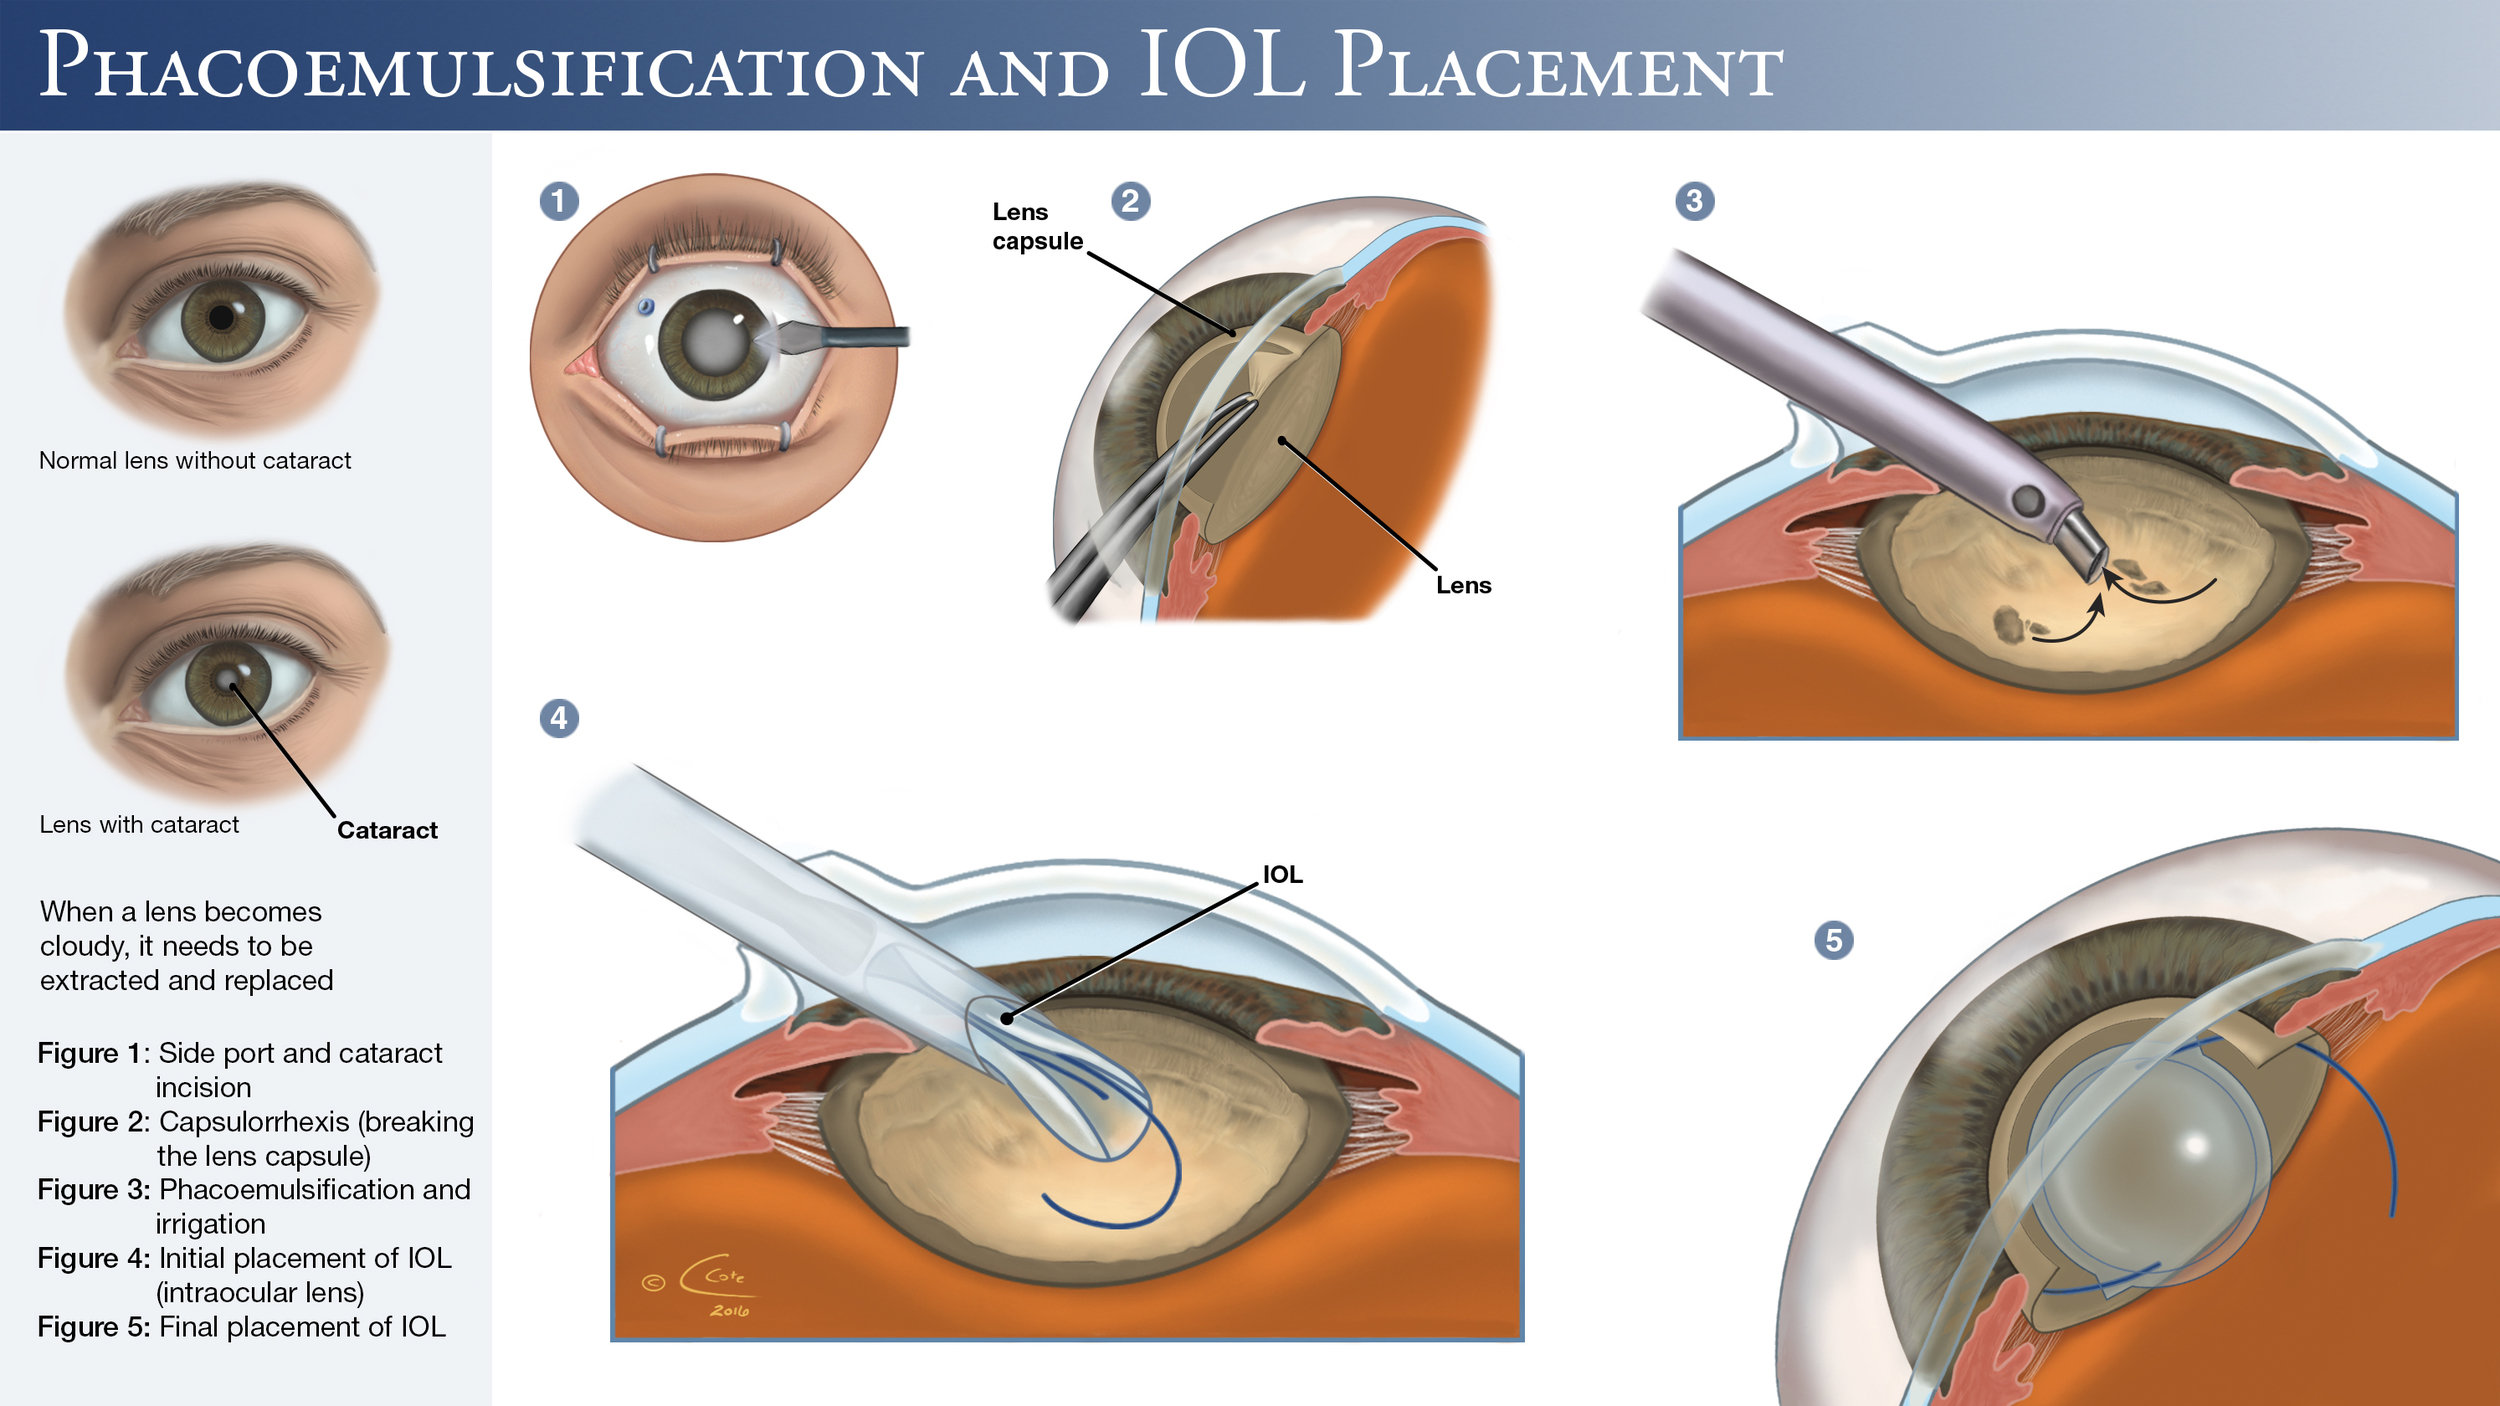 Операция катаракта замена хрусталика отзывы. Факоэмульсификация катаракты с имплантацией интраокулярной линзы. Операция ультразвуковая факоэмульсификация катаракты. Катаракта операция с имплантацией ИОЛ. Факоэмульсификация катаракты этапы операции.